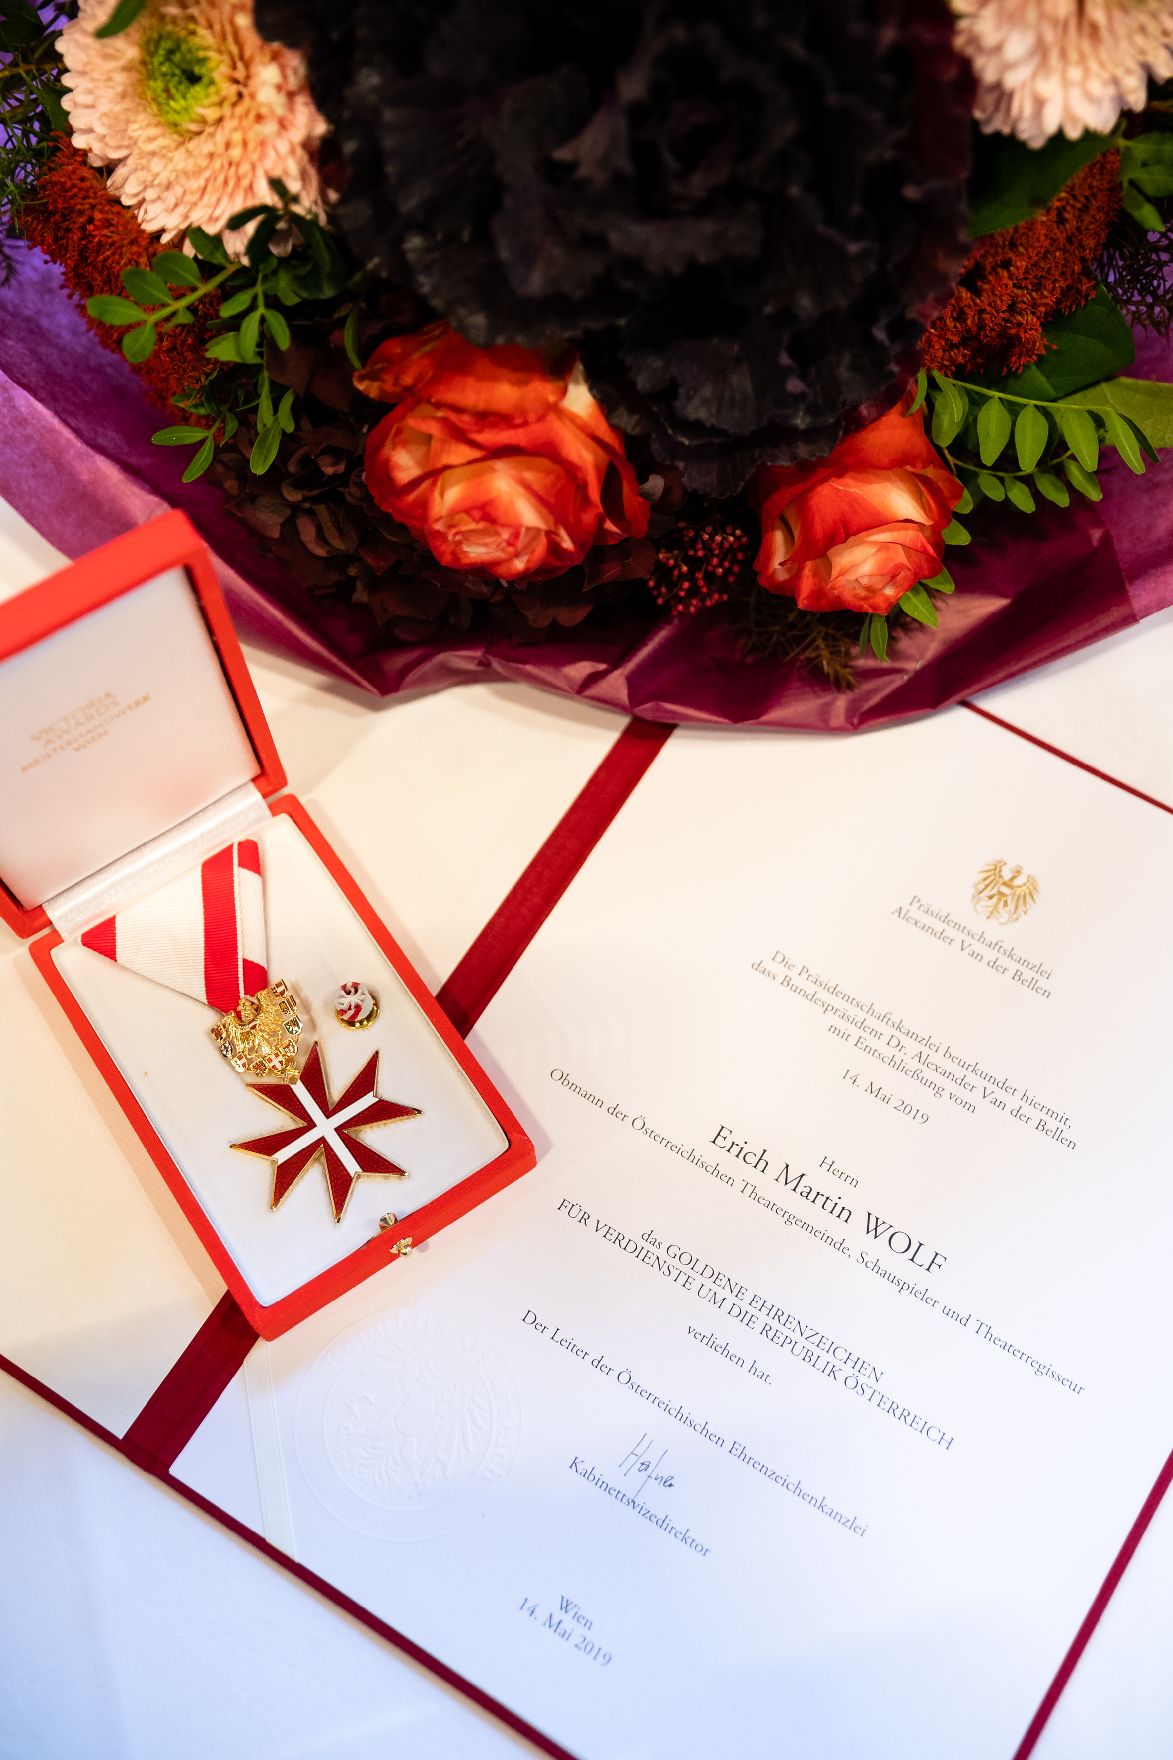 Am 22. November 2019 überreichte Sektionschef Jürgen Meindl das Goldene Ehrenzeichen für Verdienste um die Republik Österreich an Erich Martin Wolf und die Urkunde, mit der Wolfgang Klivana der Berufstitel Professor verliehen wurde.